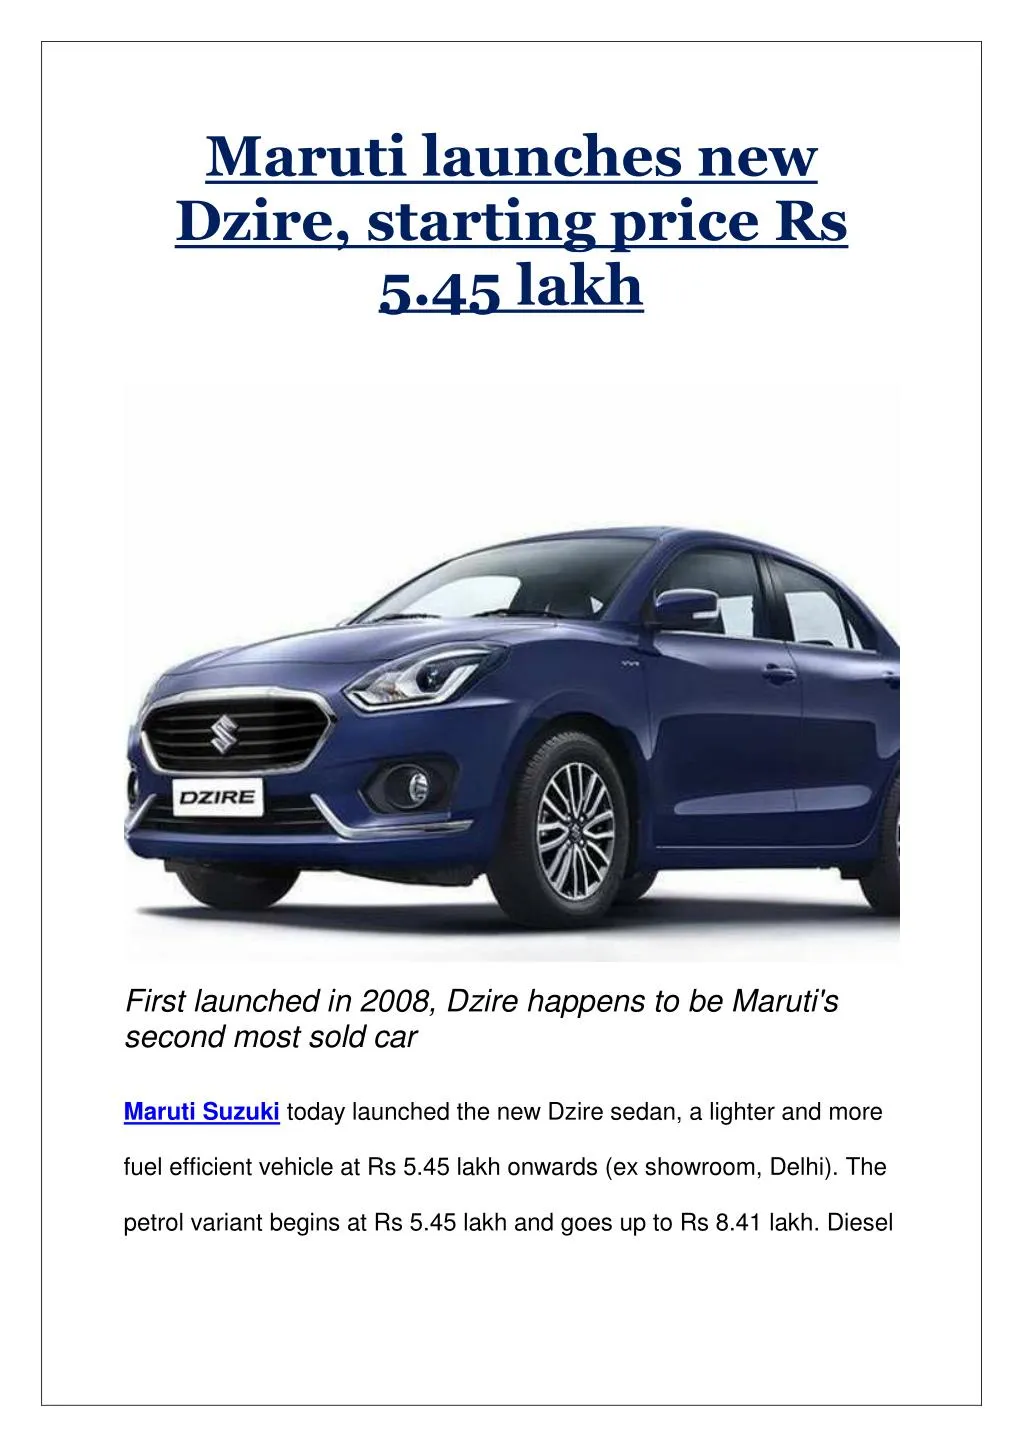 maruti launches new dzire starting price